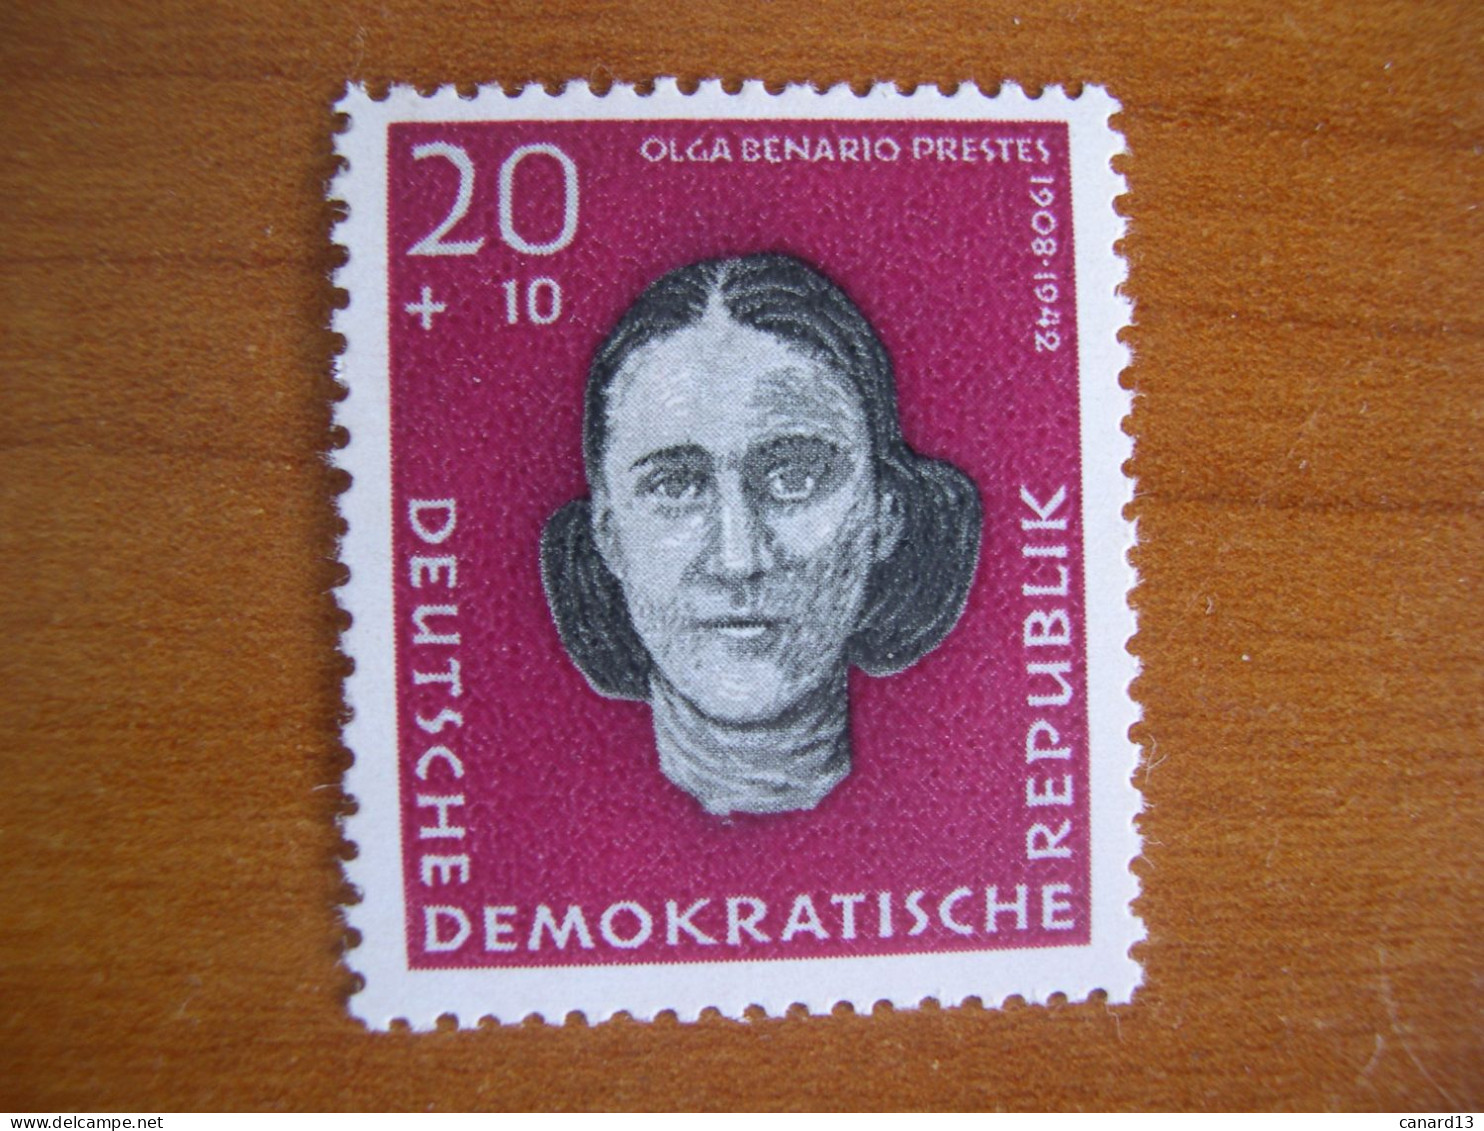 RDA   N° 432 Neuf** - Unused Stamps